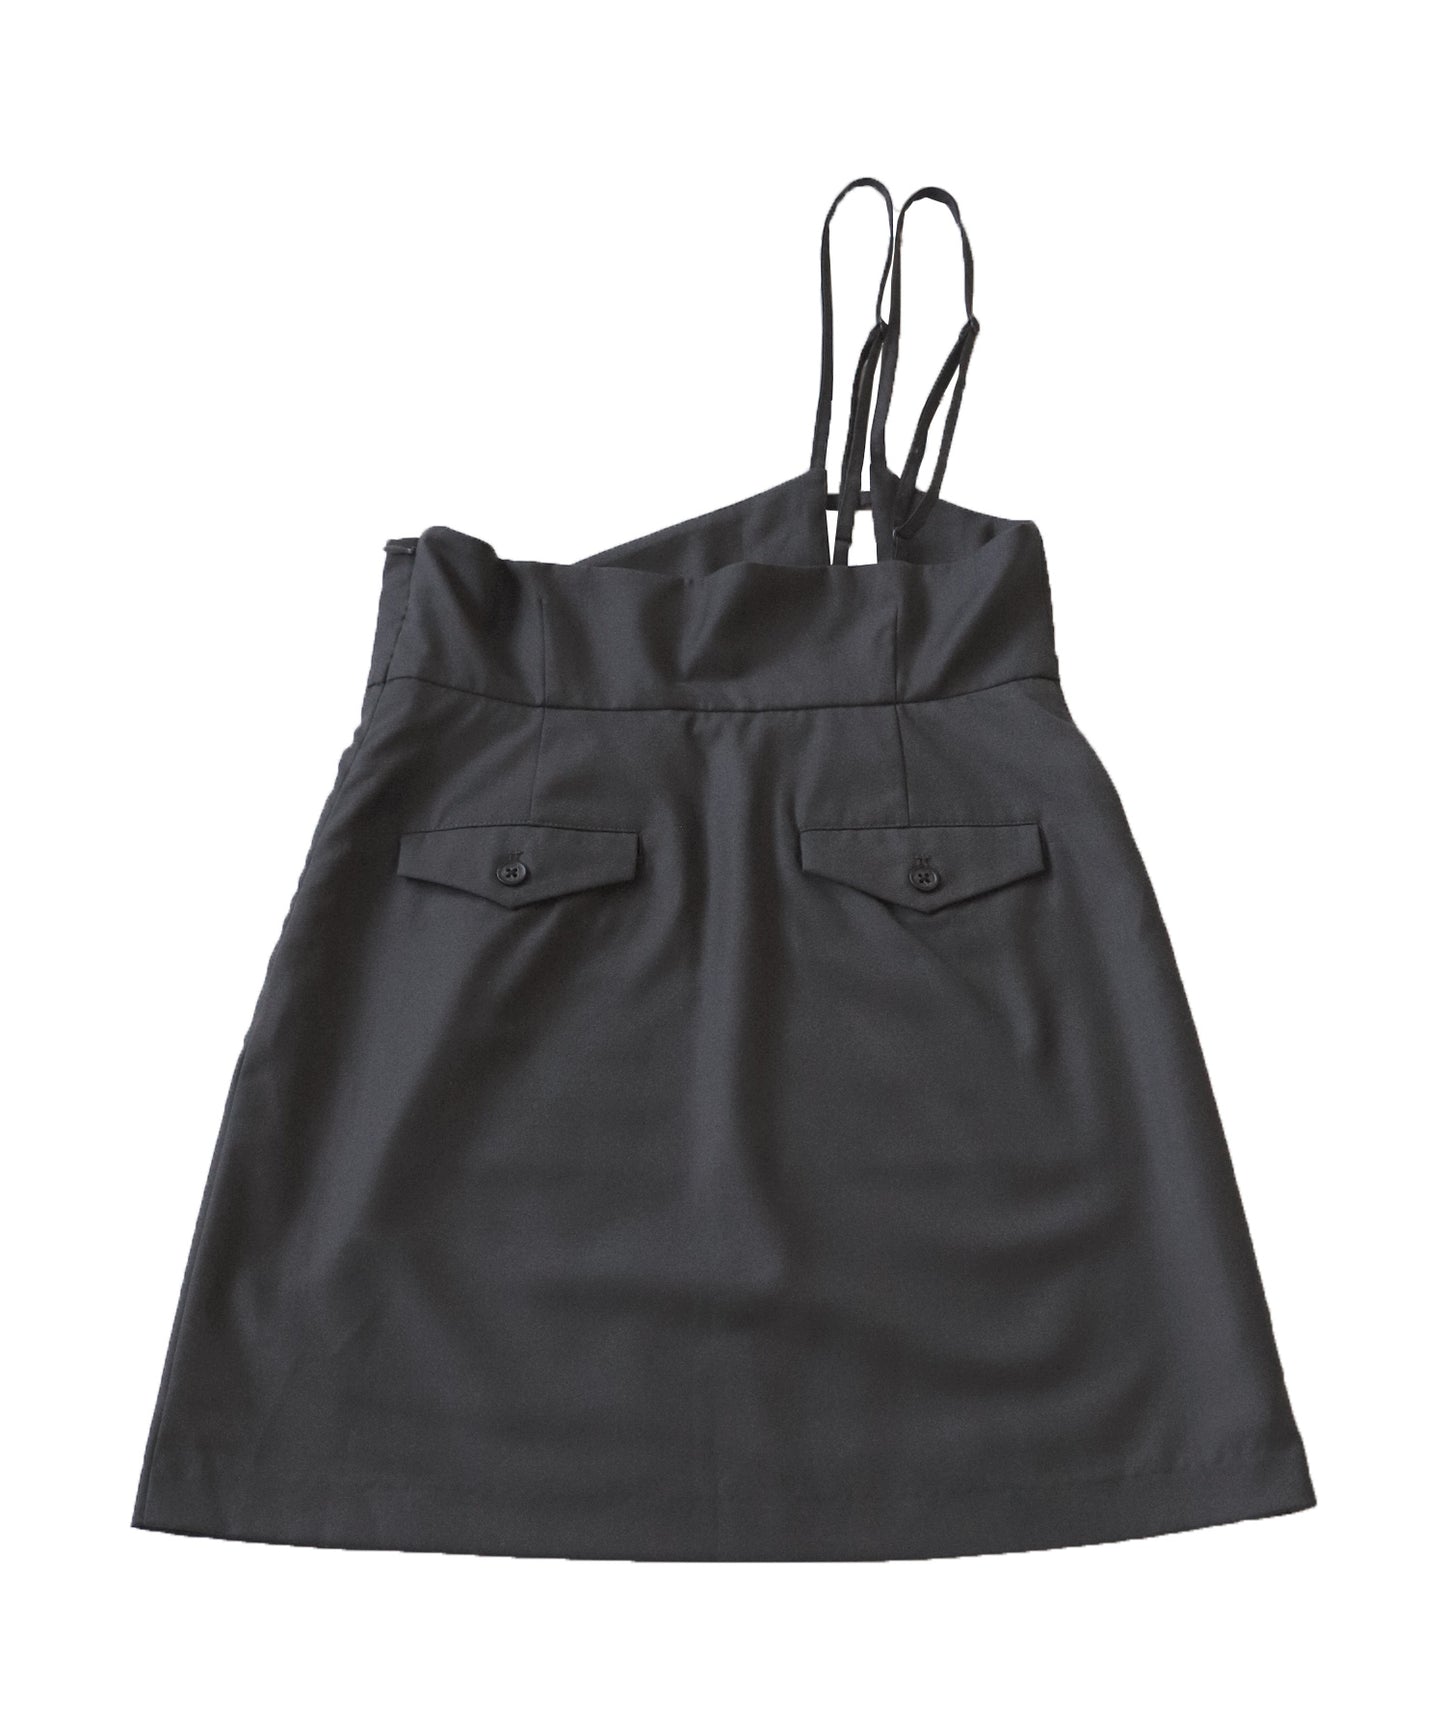 One -shoulder short skirt